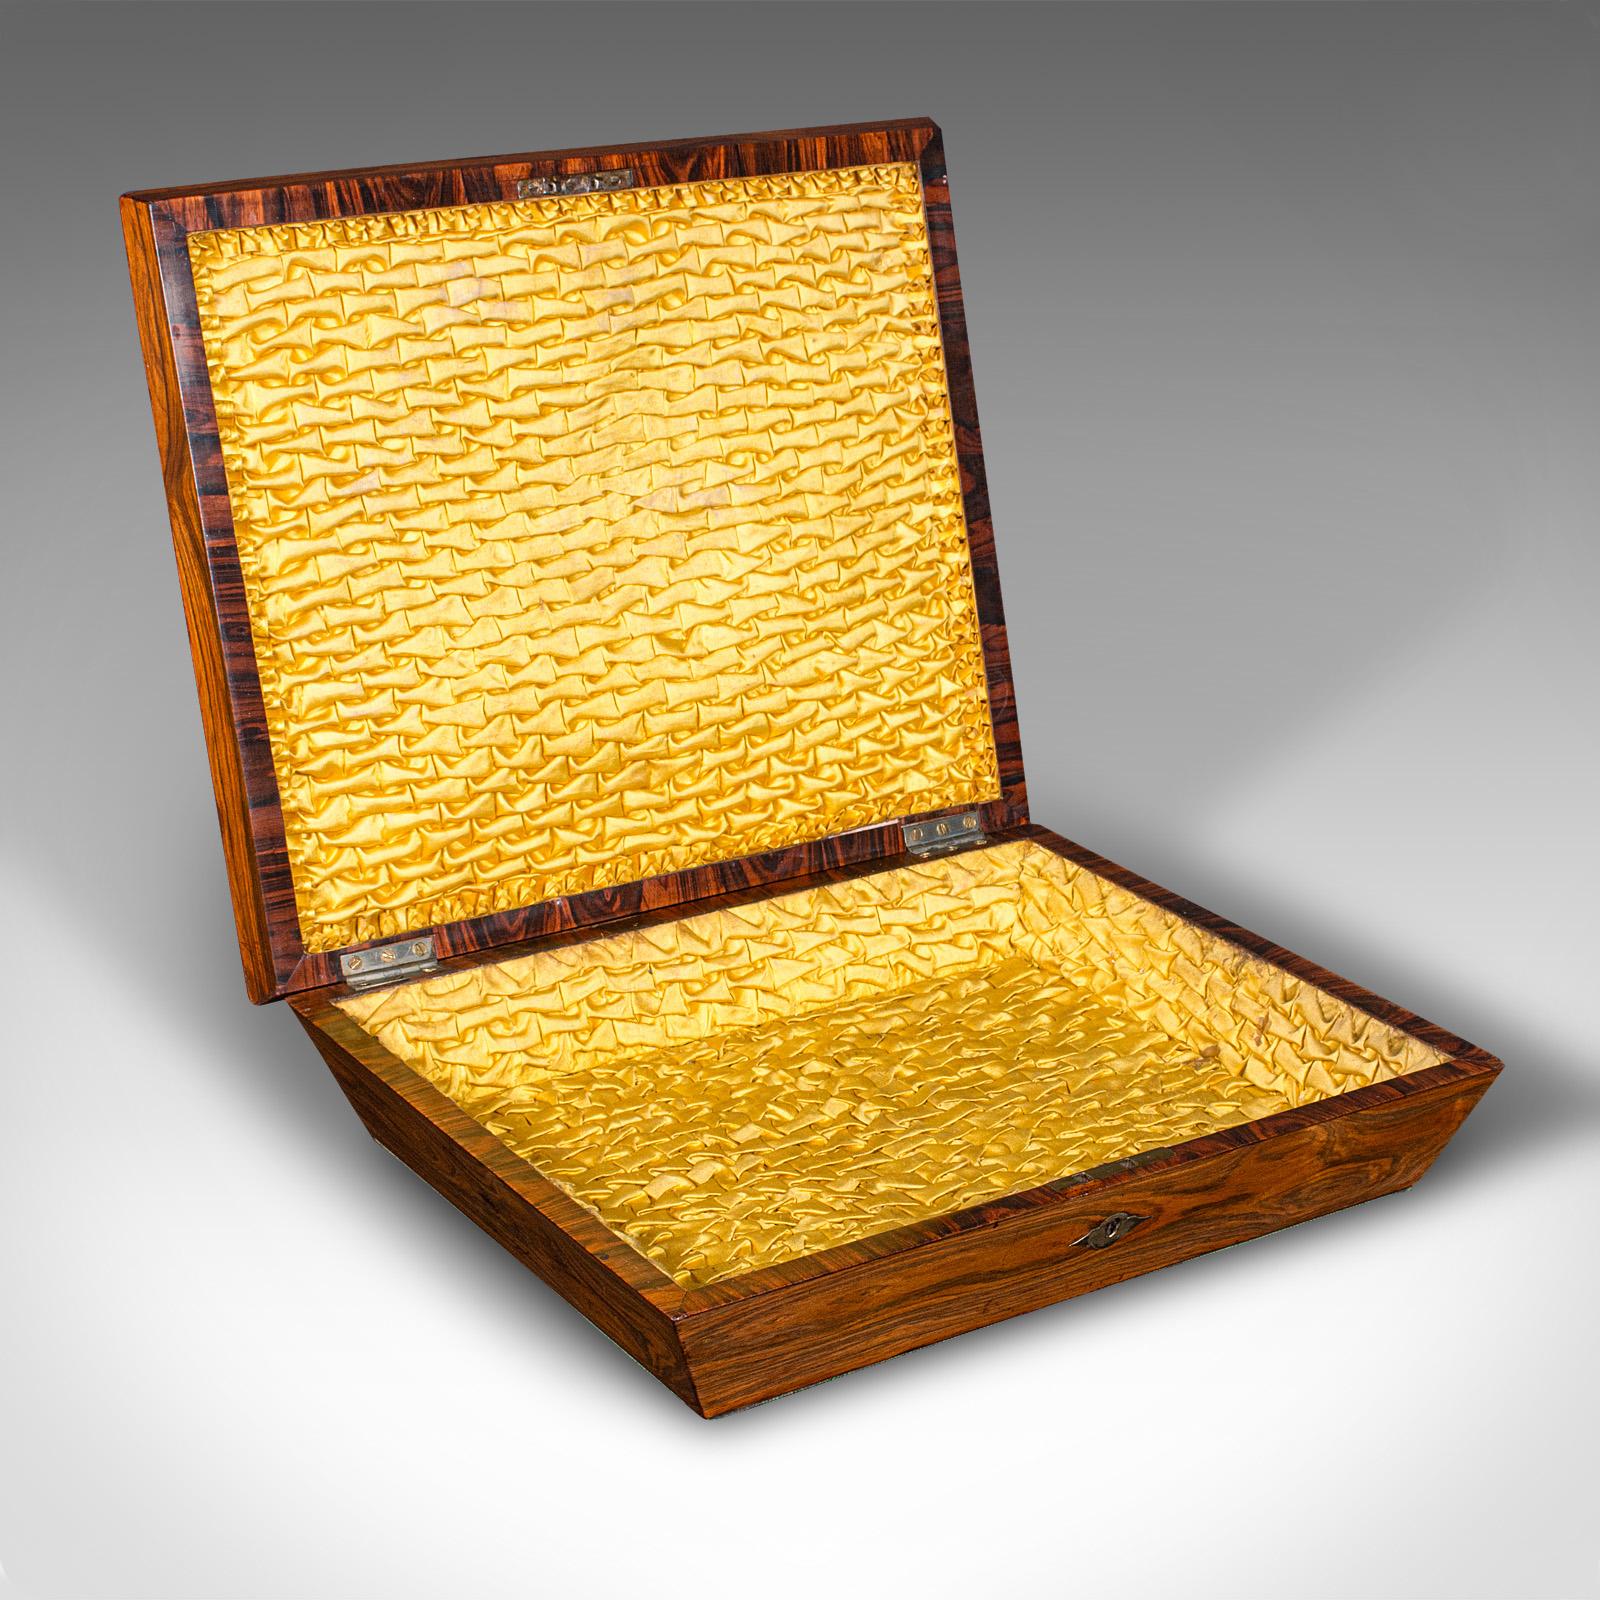 Dies ist eine antike, dekorative Schmuckdose. Eine englische Schmuckschatulle aus Rosenholz und Seidenbaumwolle aus der späten Regency-Periode, ca. 1830.

Kräftige Erinnerungsbox mit auffälligem Futter aus Seidenbaumwolle
Zeigt eine wünschenswerte